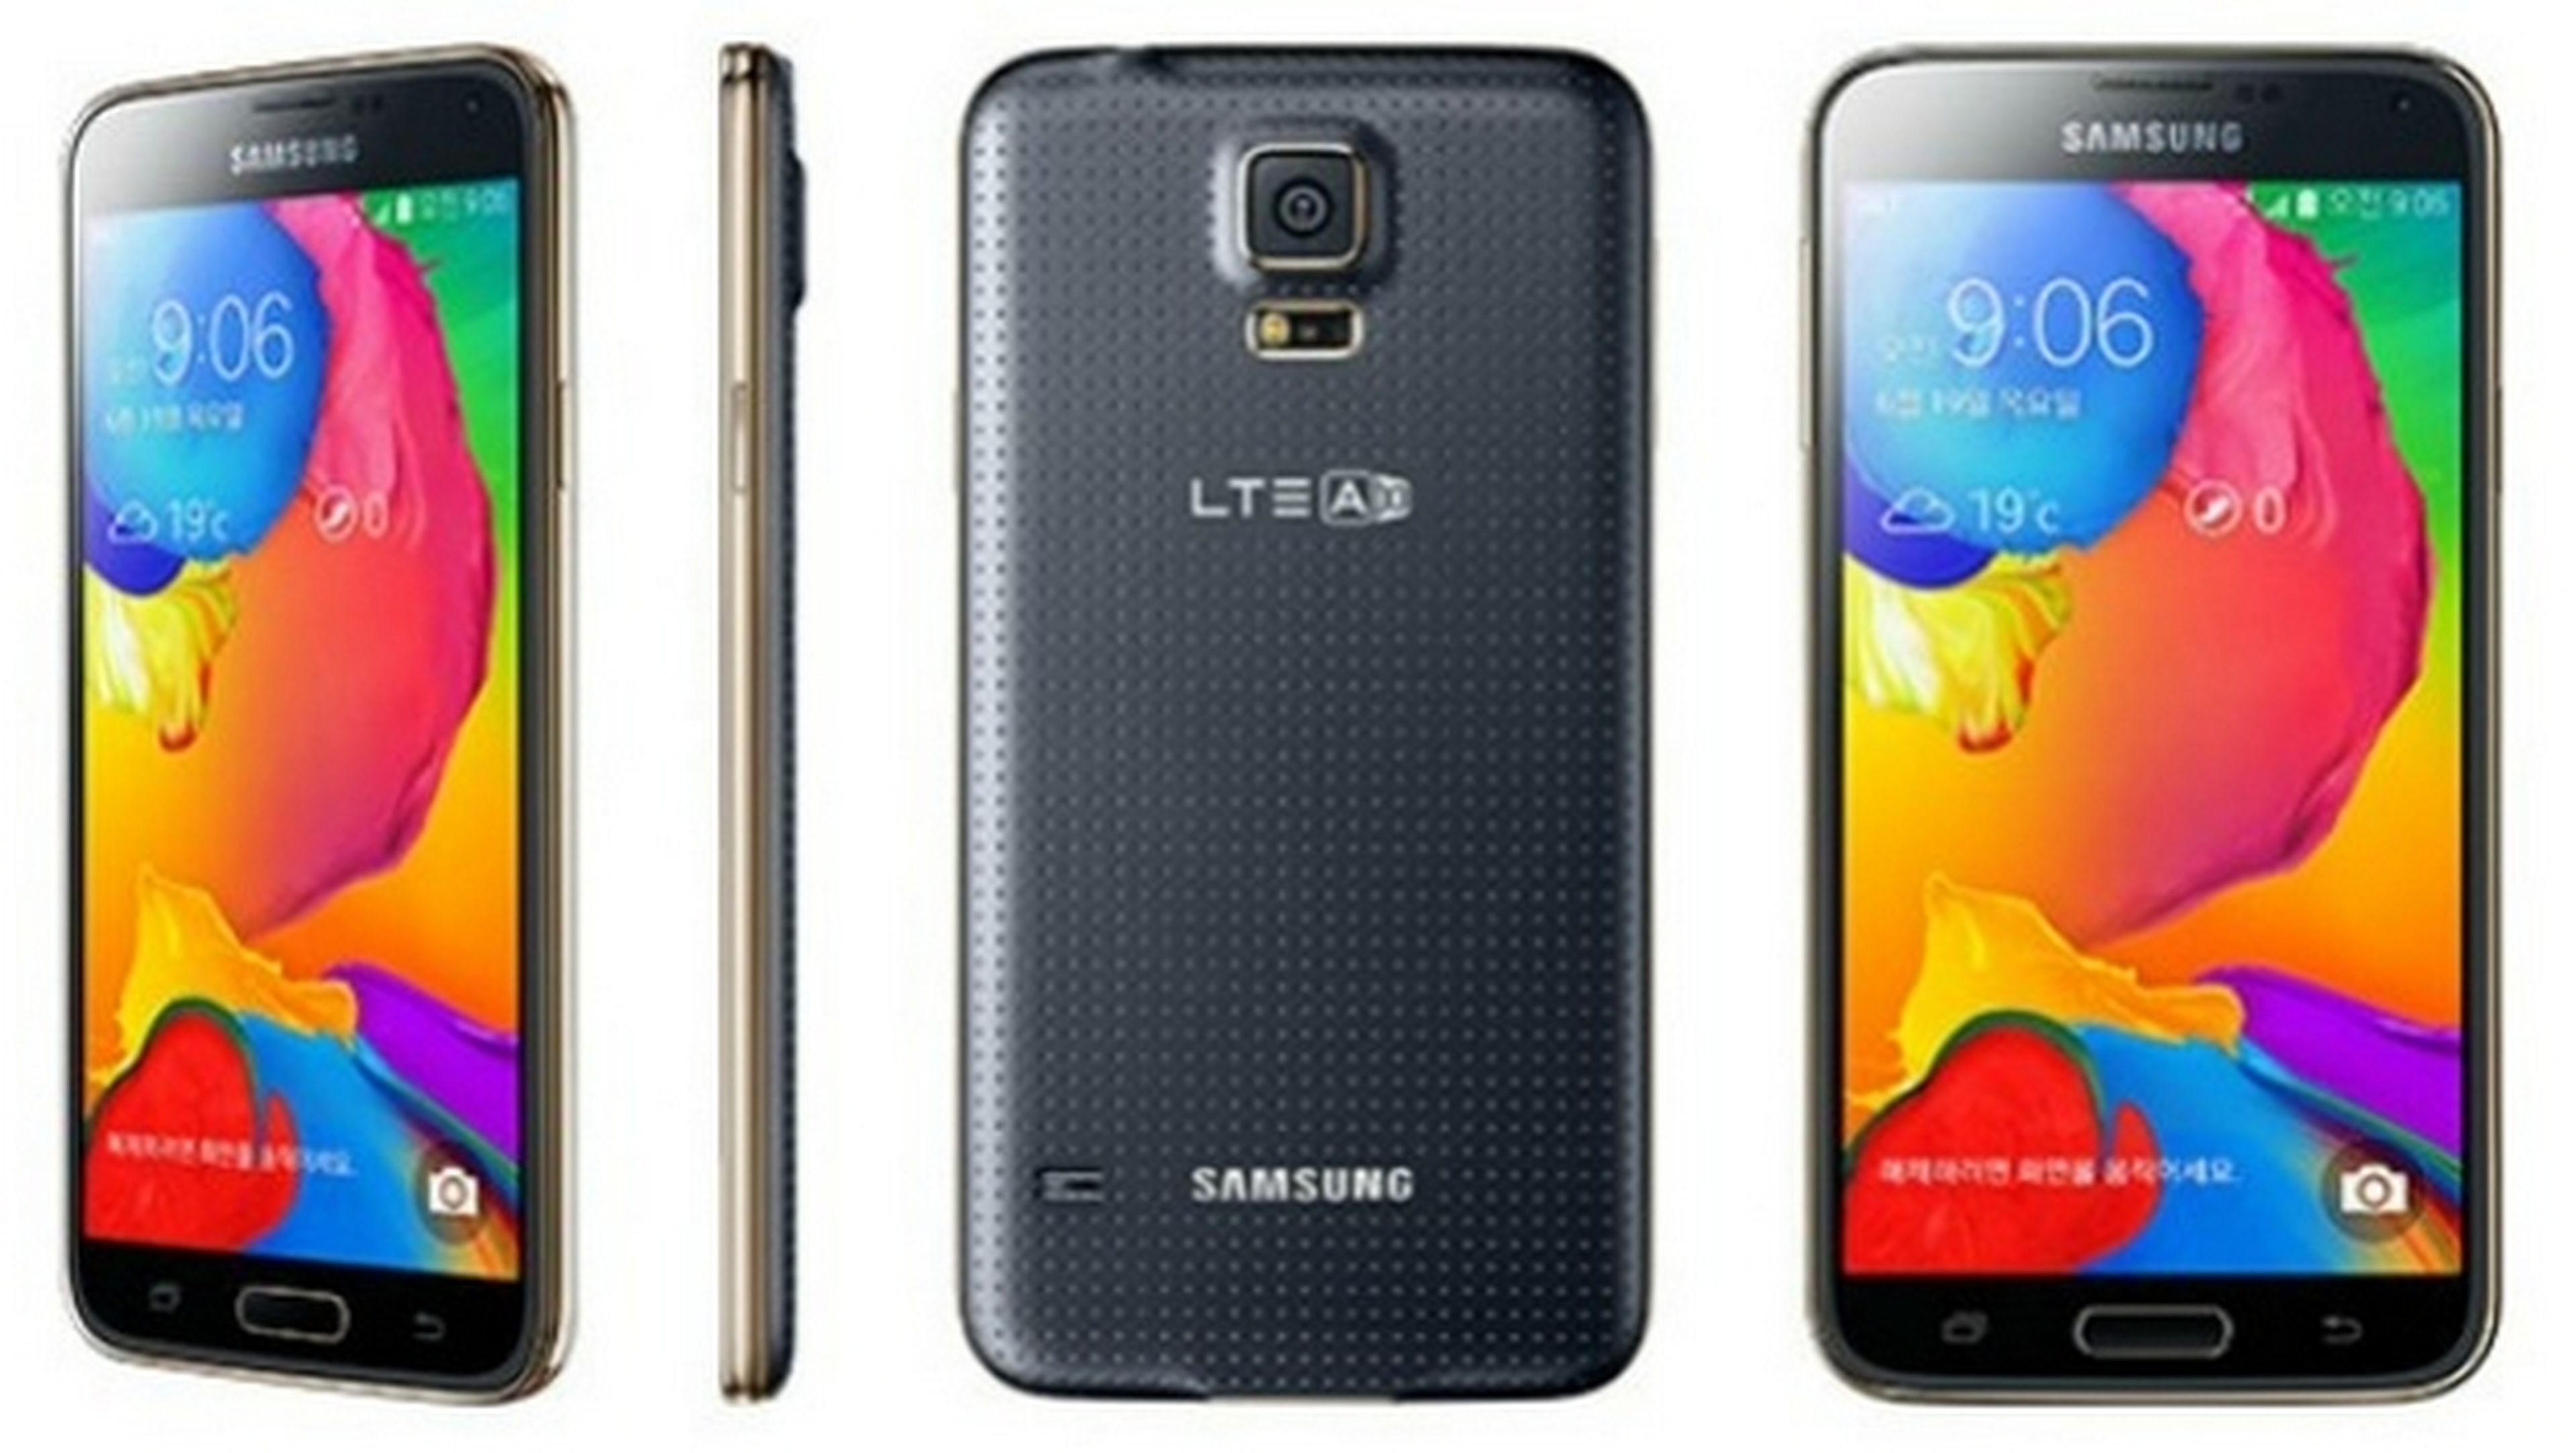 Samsung anuncia el Samsung Galaxy S5 LTE-A con pantalla QHD, procesador Snapdragon 805, y 3 GB de RAM. Es el rumoreado Samsung Galaxy S5 Prime.